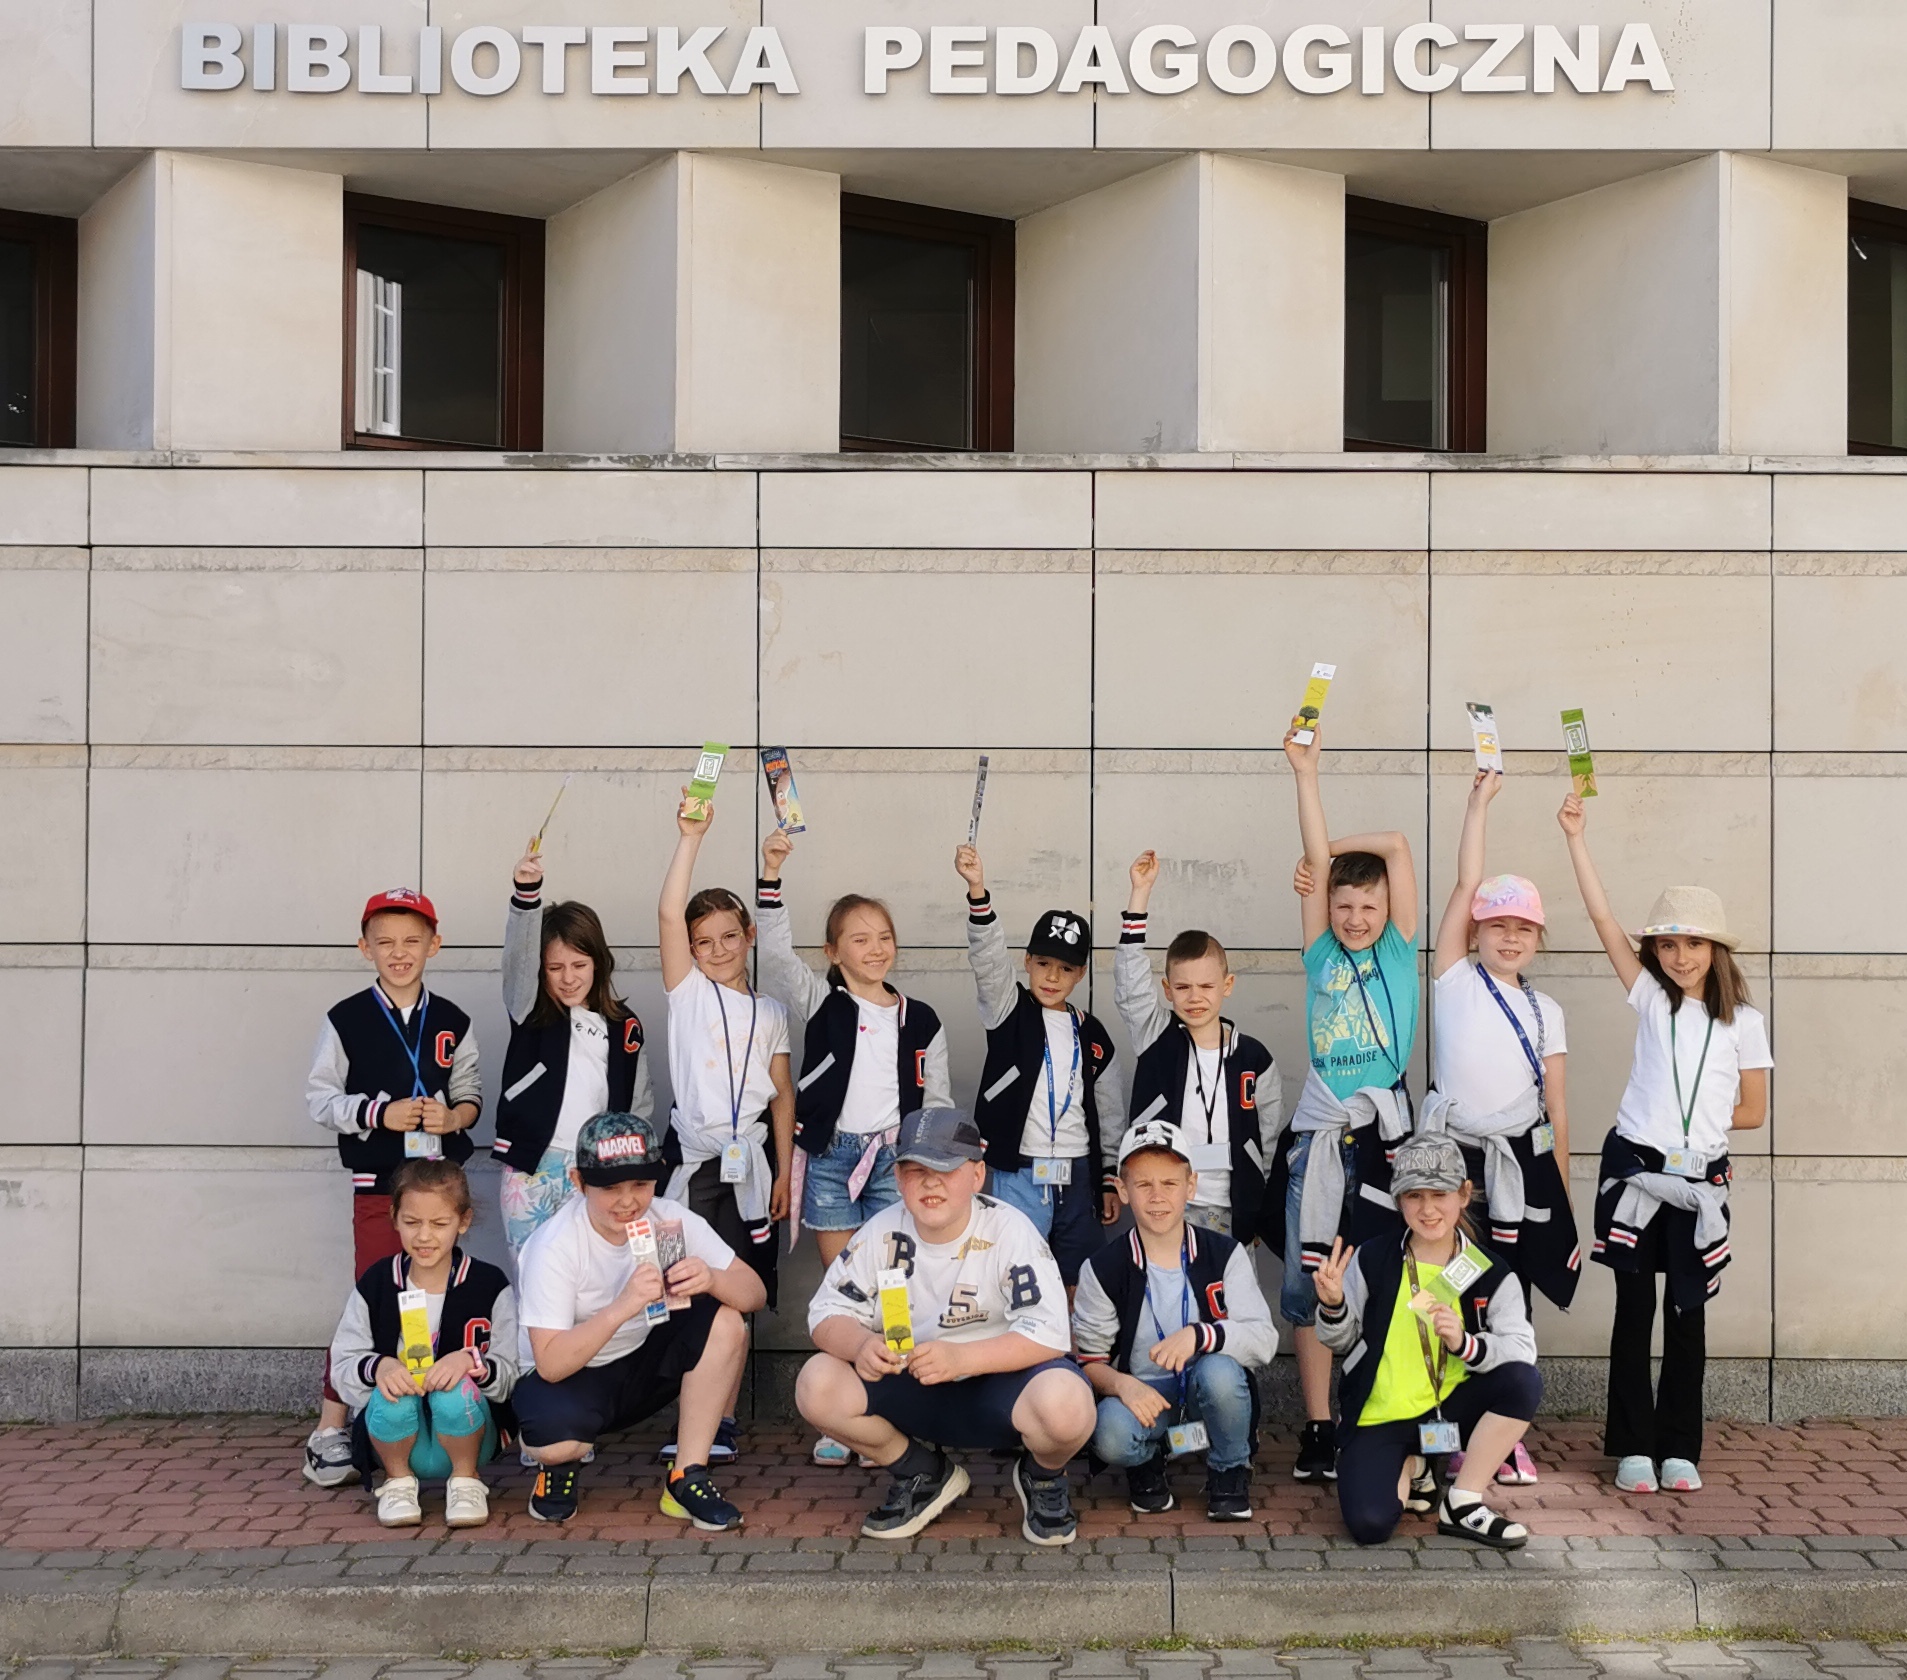 Zdjęcie grupowe. Uczniowie stoją przed budynkiem Biblioteki Pedagogicznej im. Heleny Radlińskiej w Siedlcach.